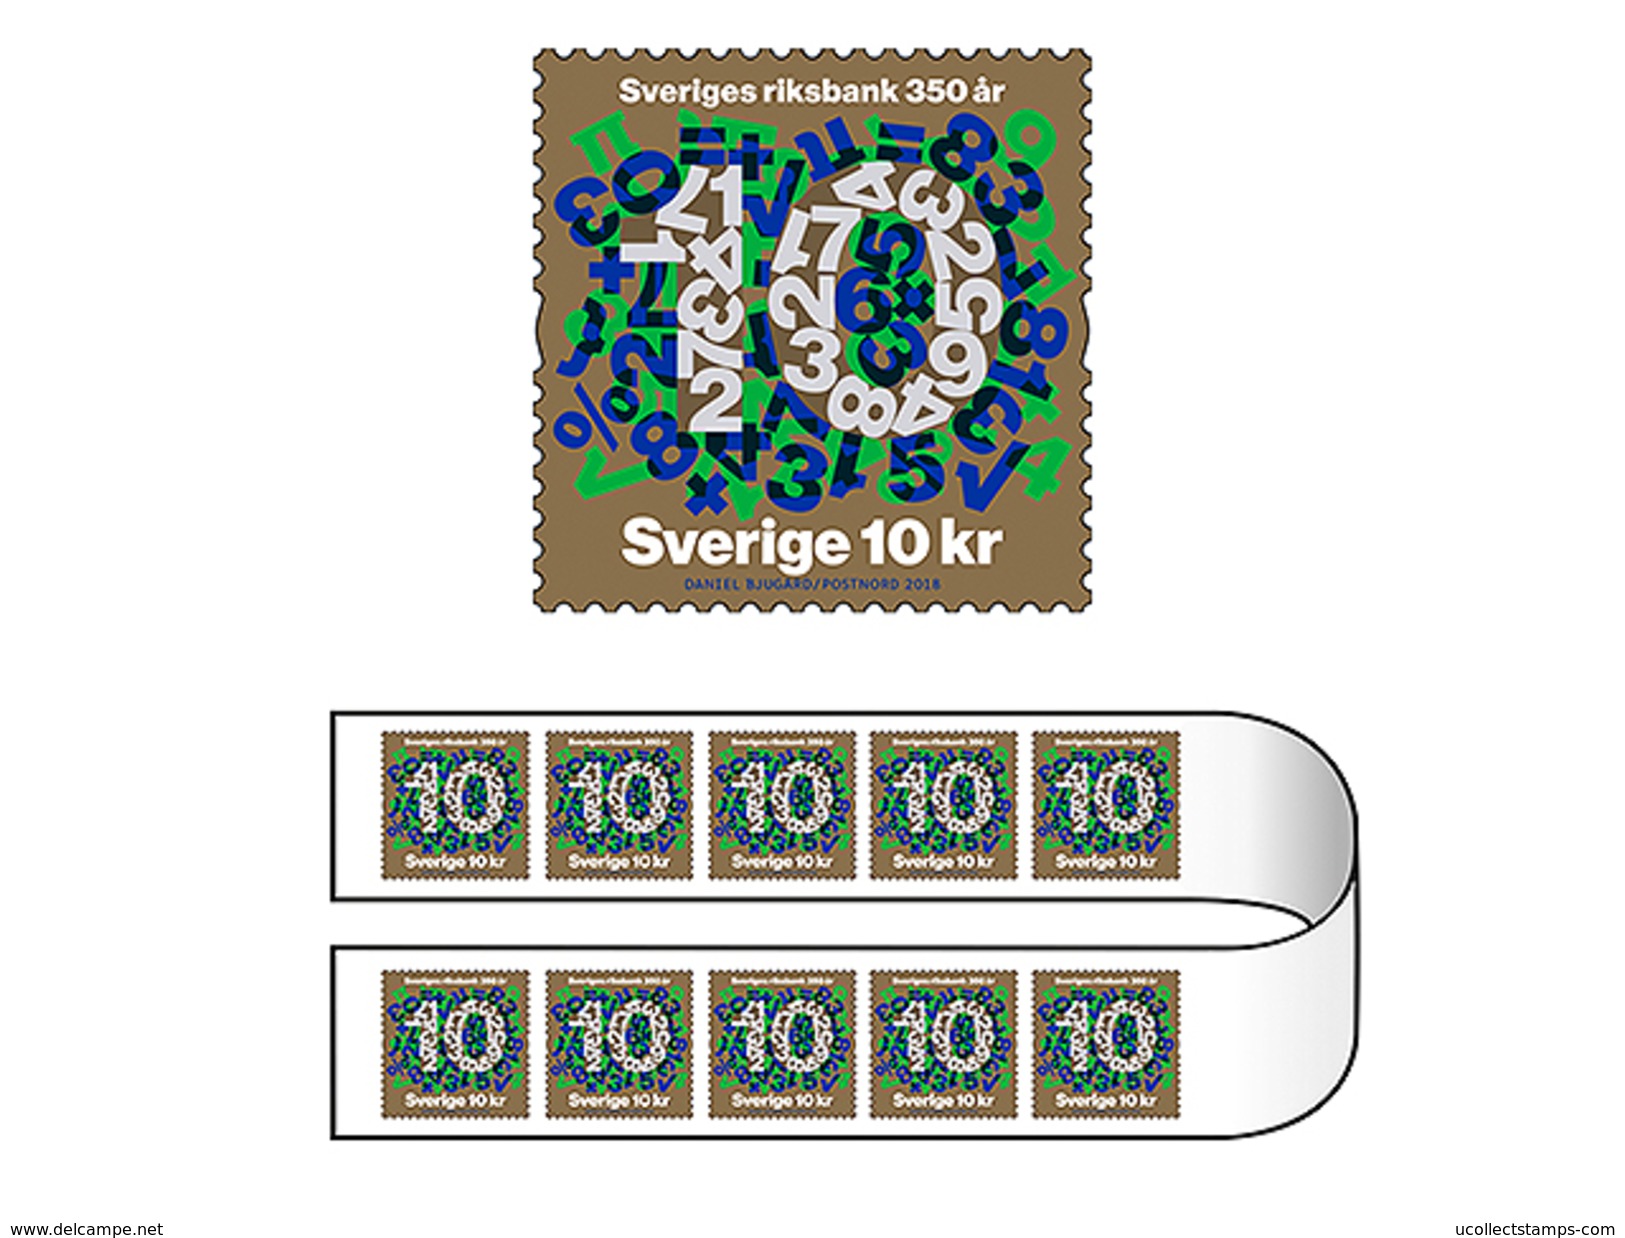 Zweden  2018   Riksbank Rolzegel  Set Of 2 Coilstamps   One Of Each   Postfris/mnh - Ungebraucht